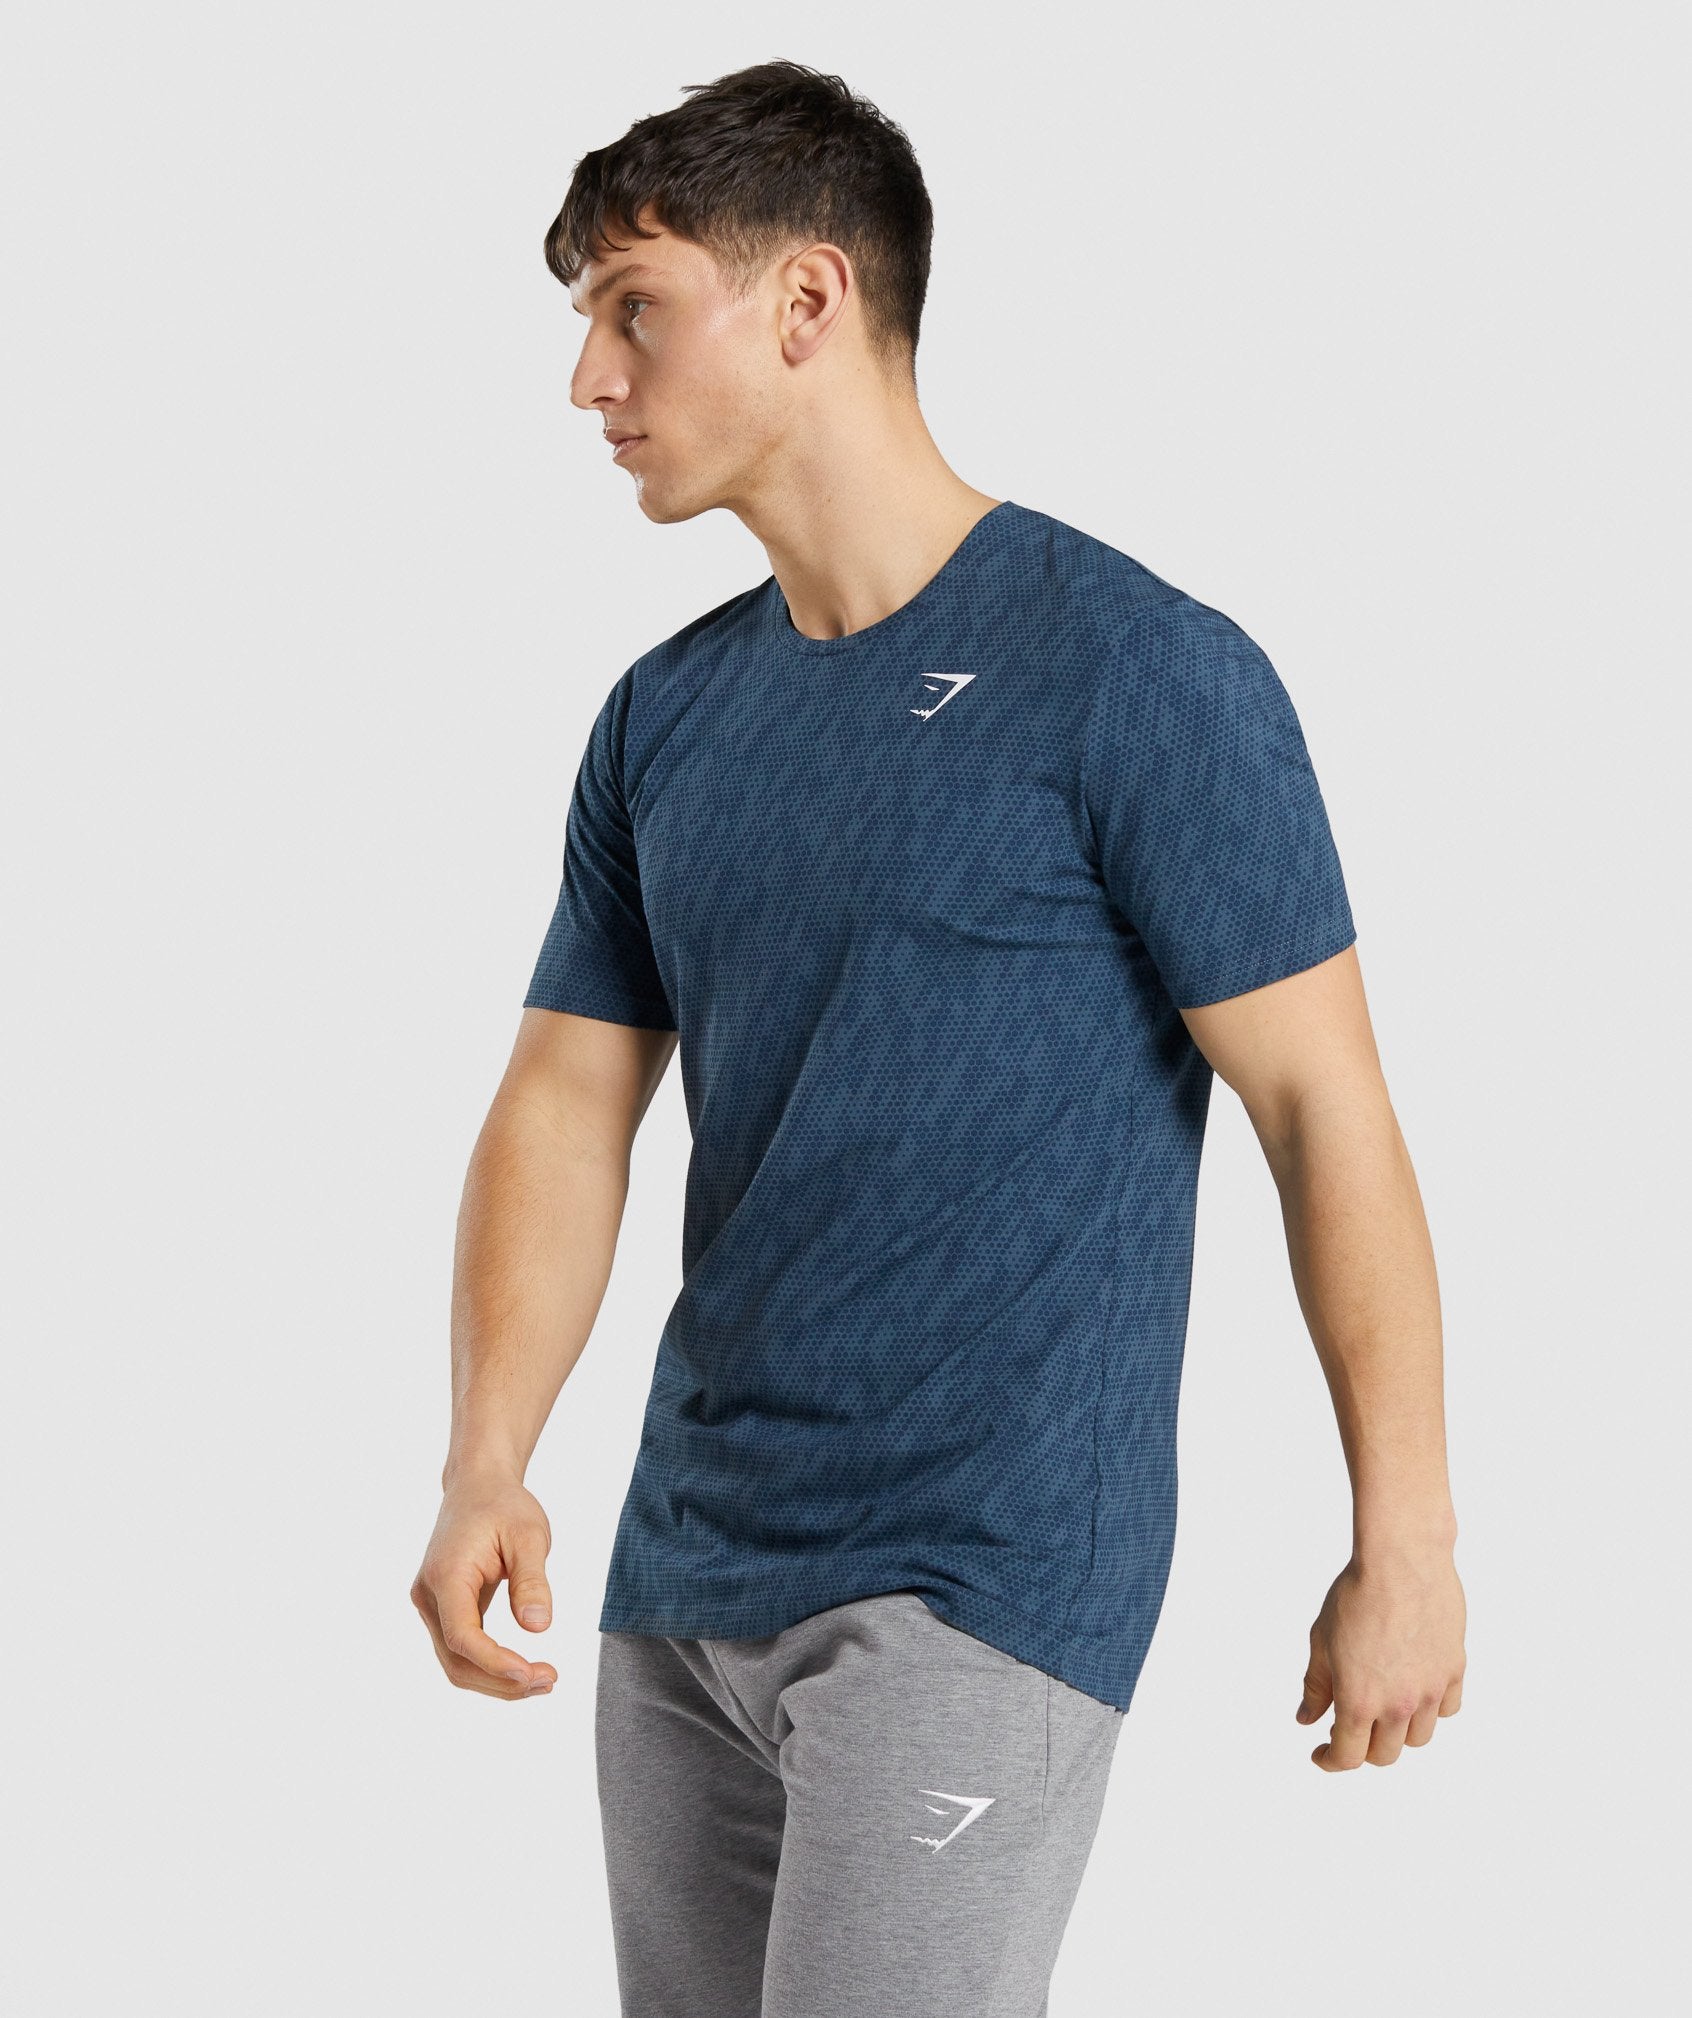 Gymshark Critical Regular Fit T-Shirt - Teal Print